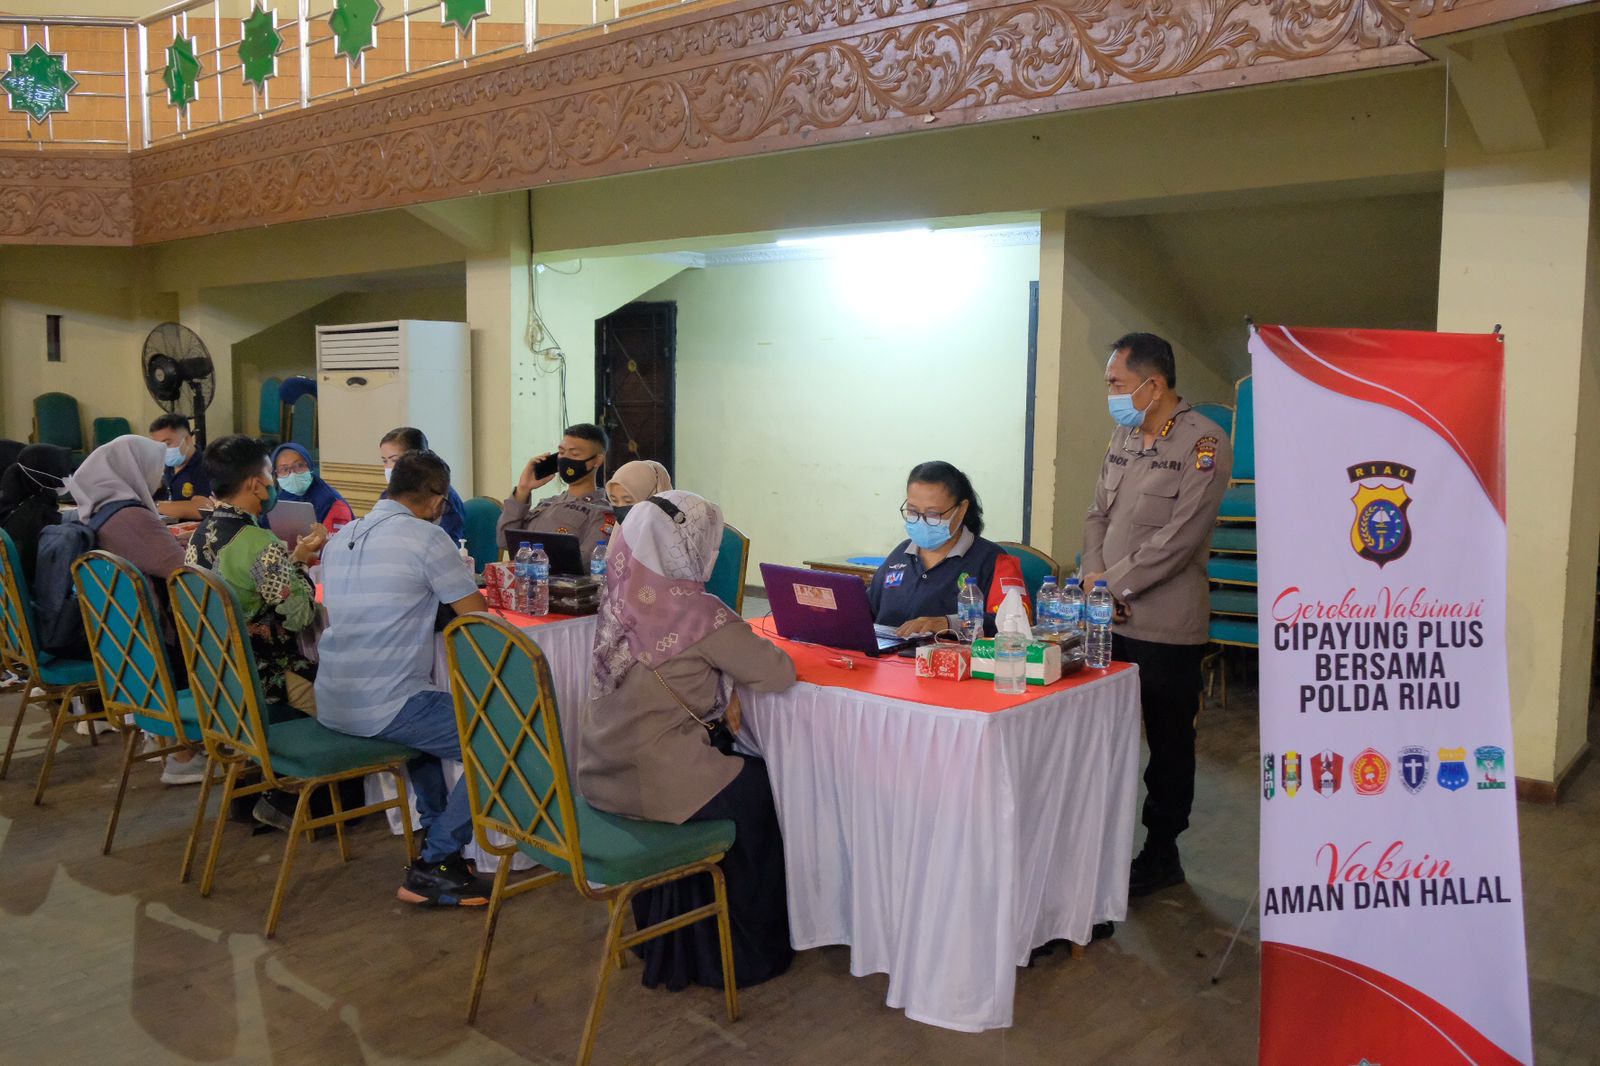 Polda Riau Bersama Organisasi Kemahasiswaan, Gelar Vaksinasi Di Kampus UIN Suska